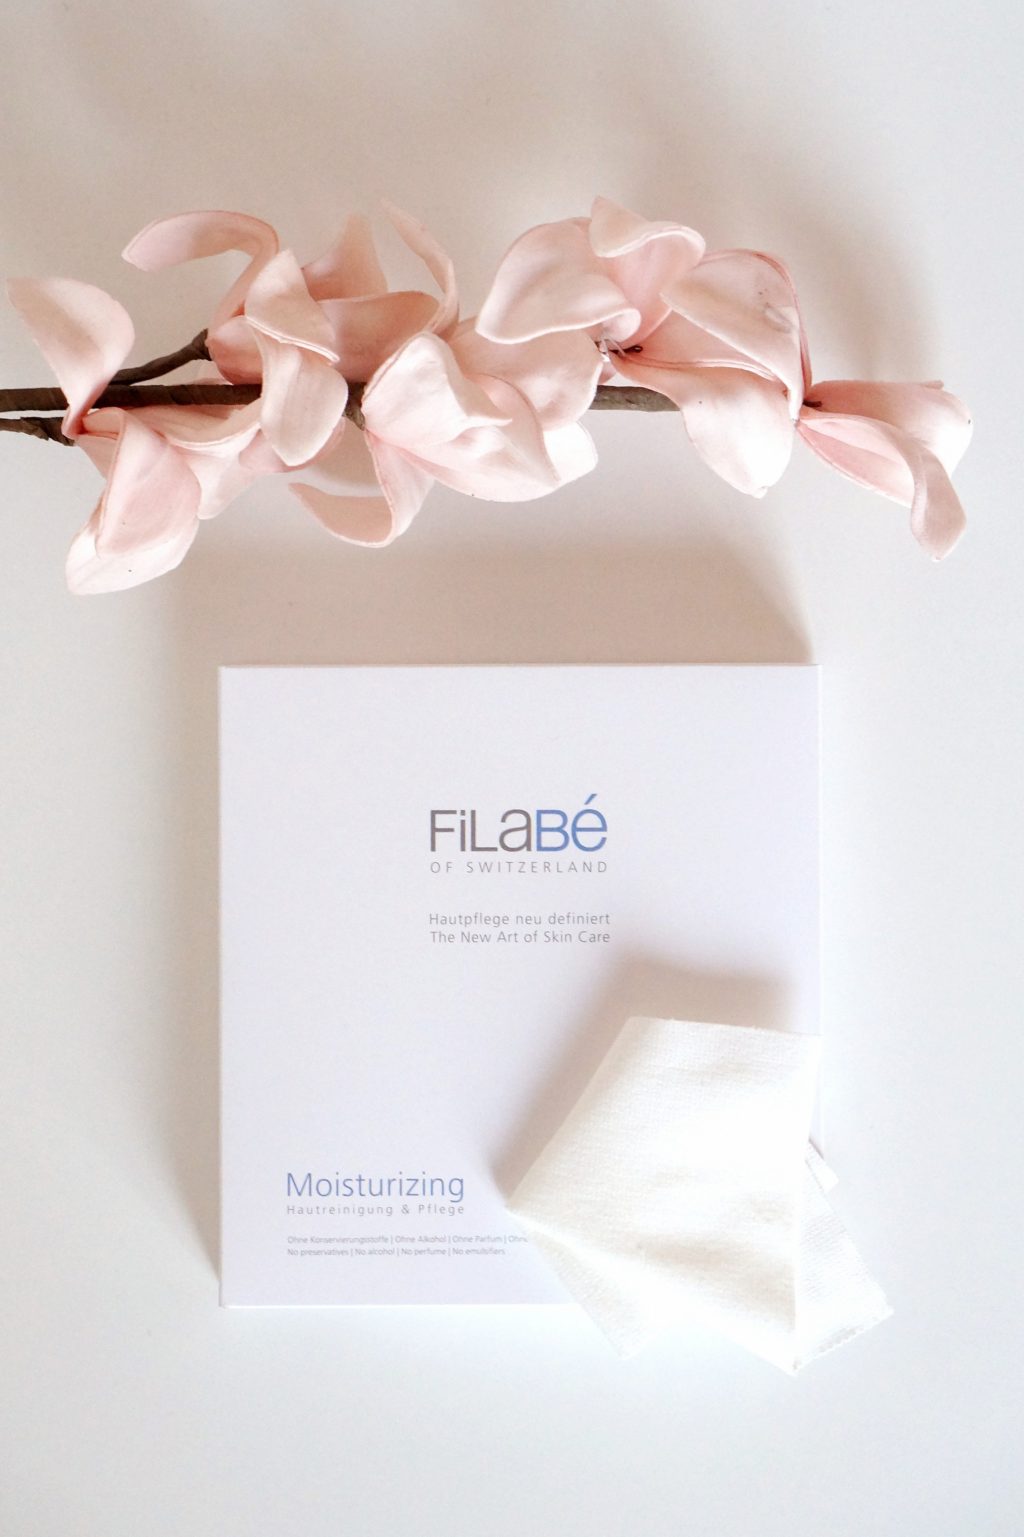 Filabe-of-switzerland-moisturizing